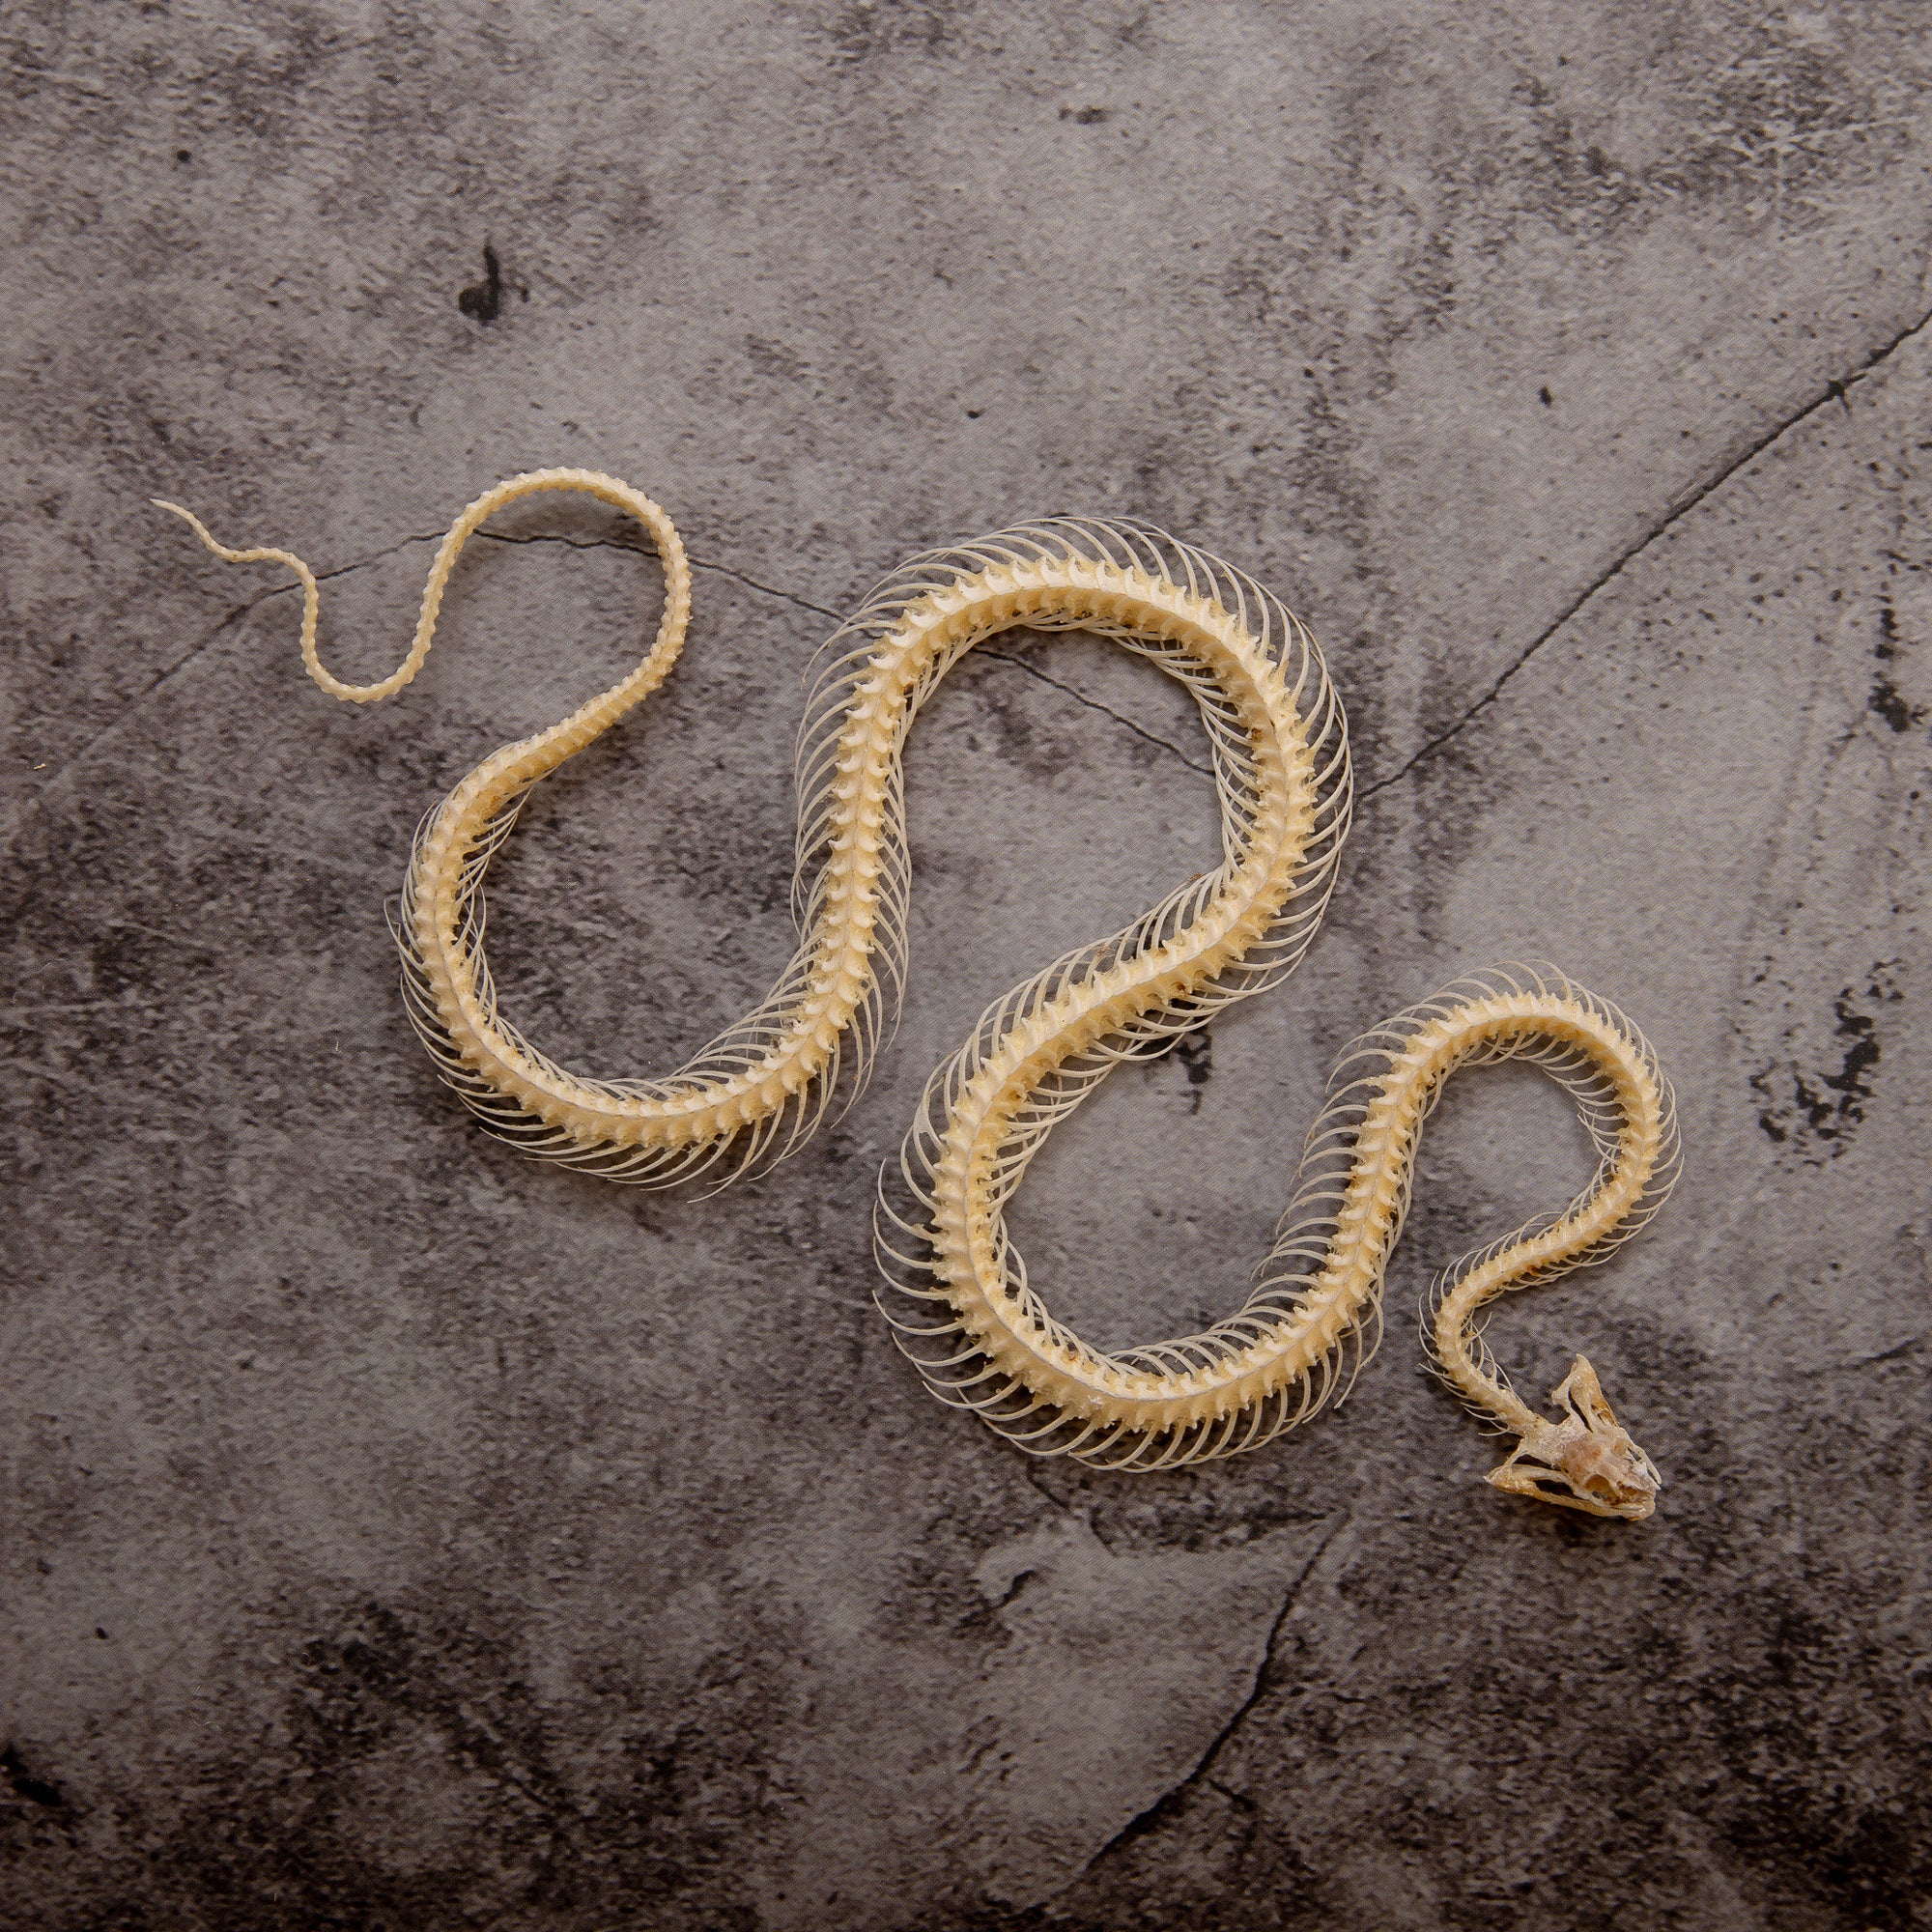 Striped Keelback Snake (Xenochrophis vittatus) | A1 Curved Skeleton Specimen